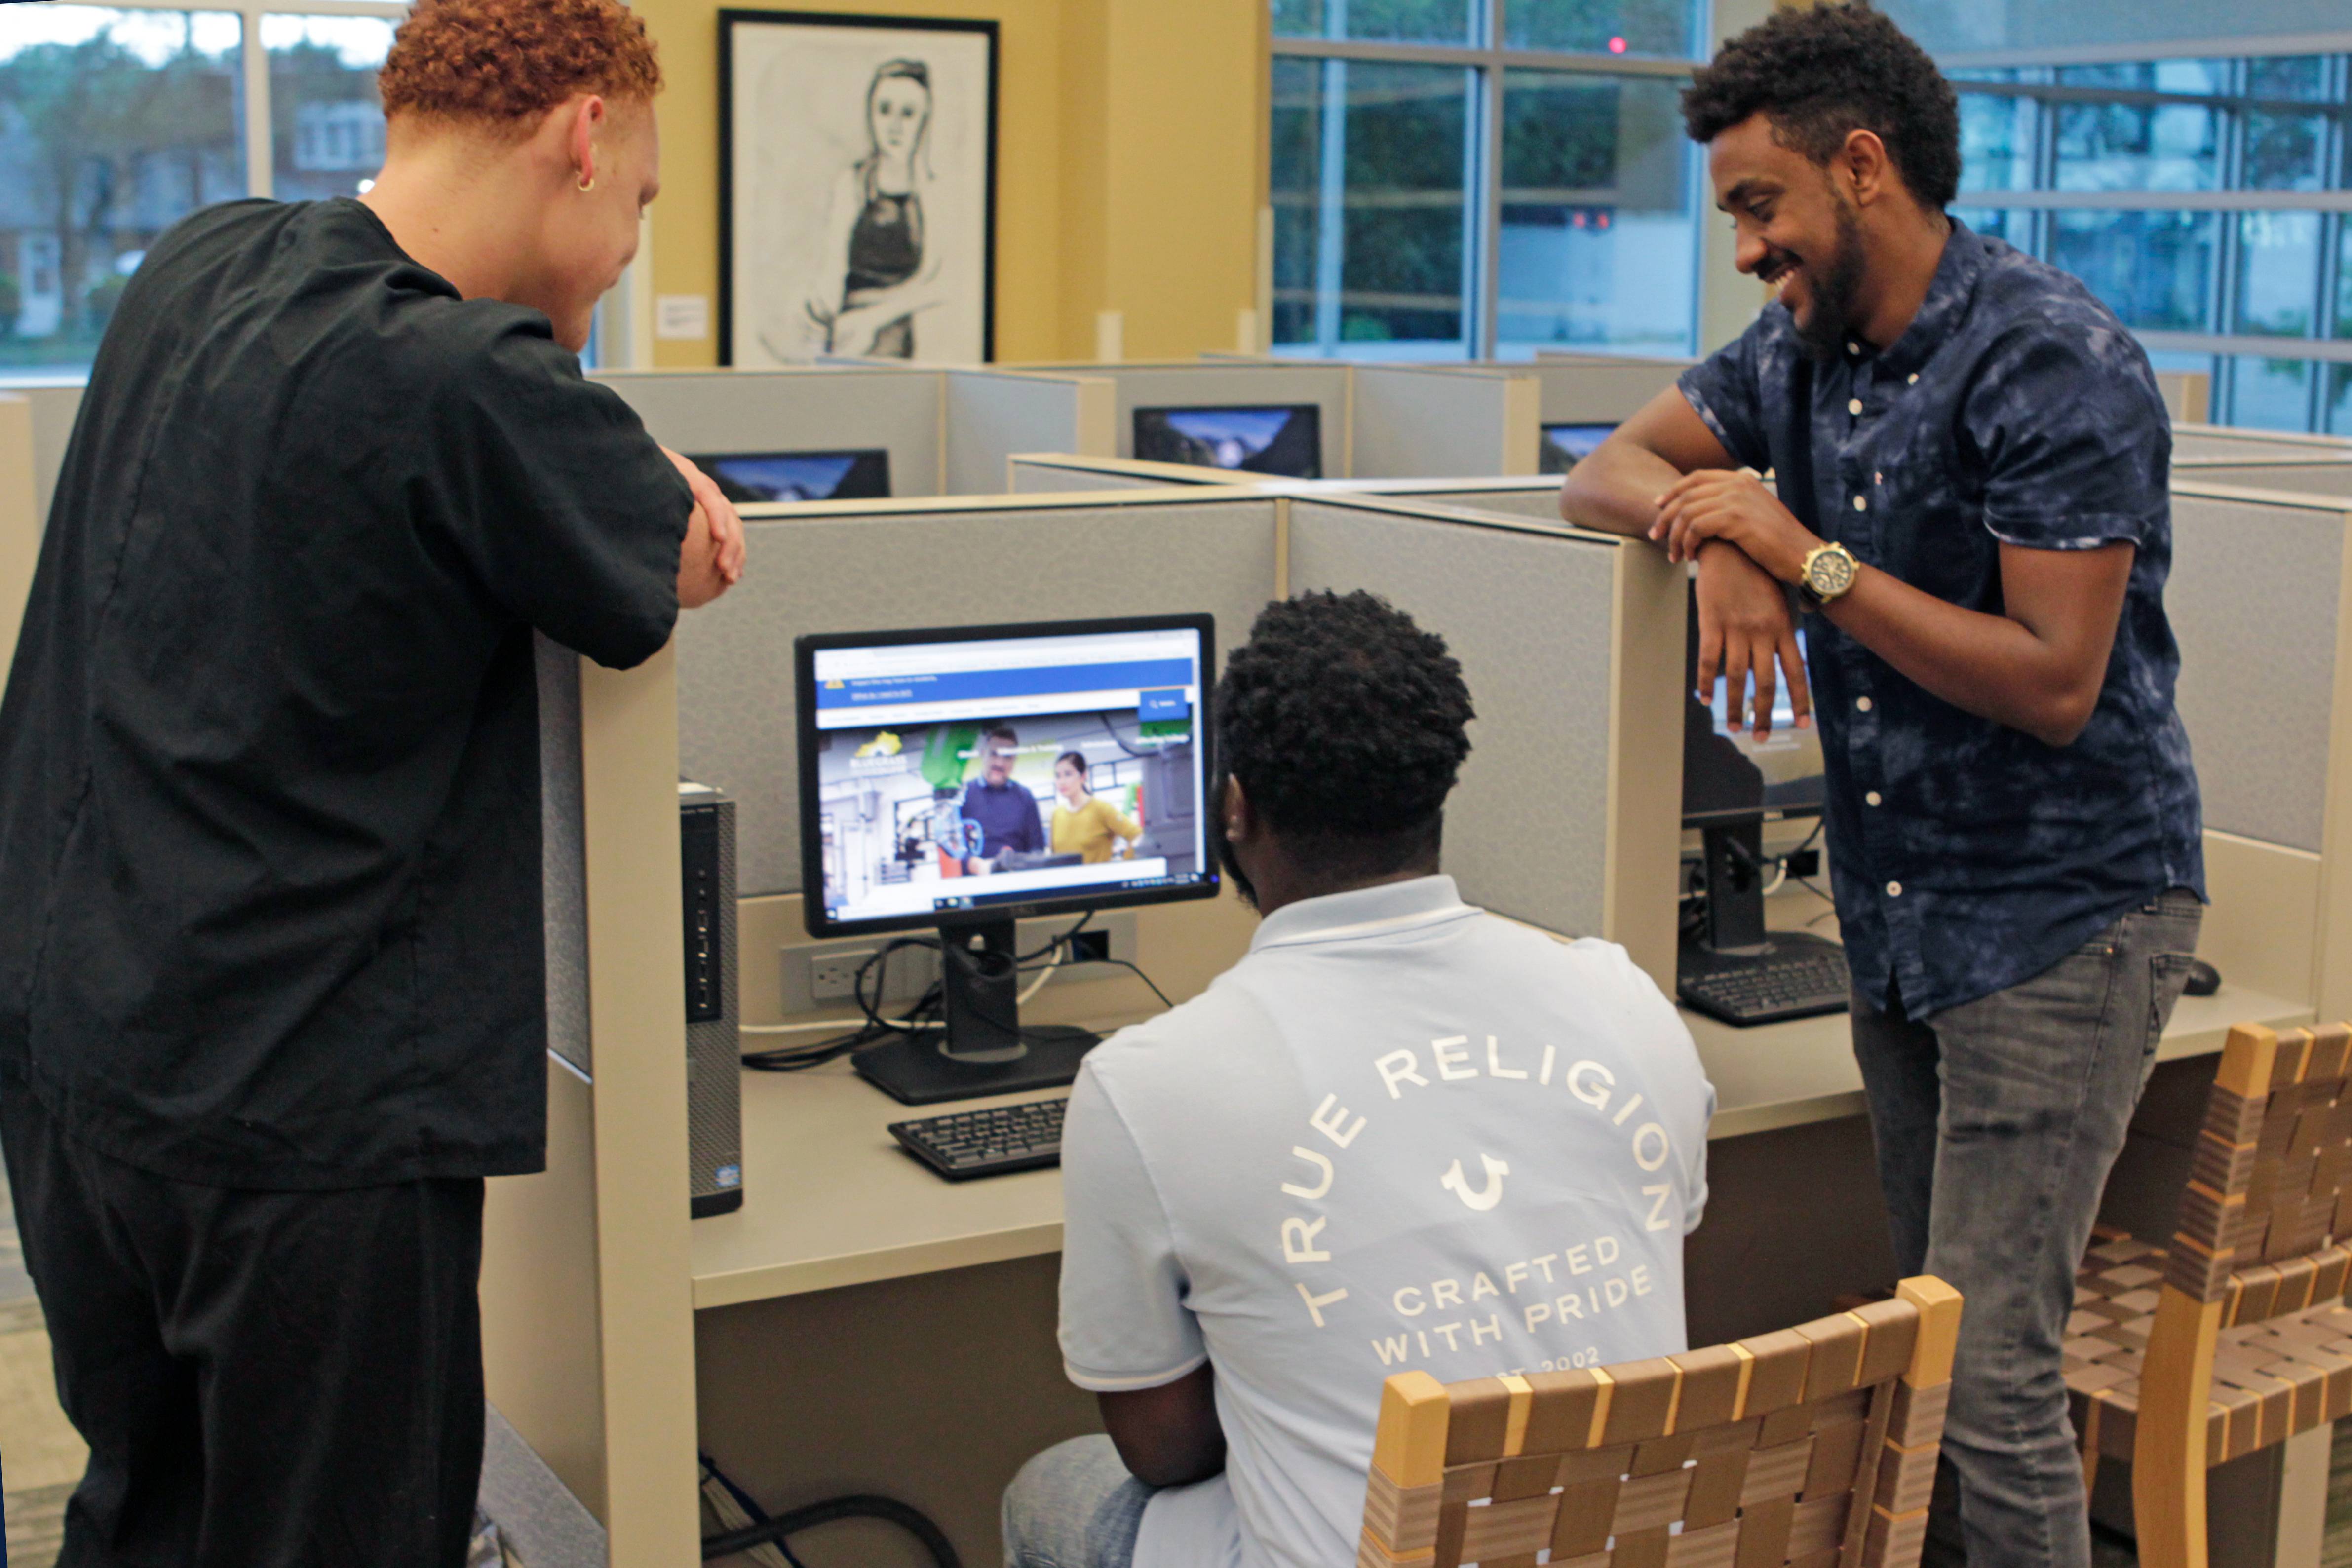 3 students looking at a computer monitor